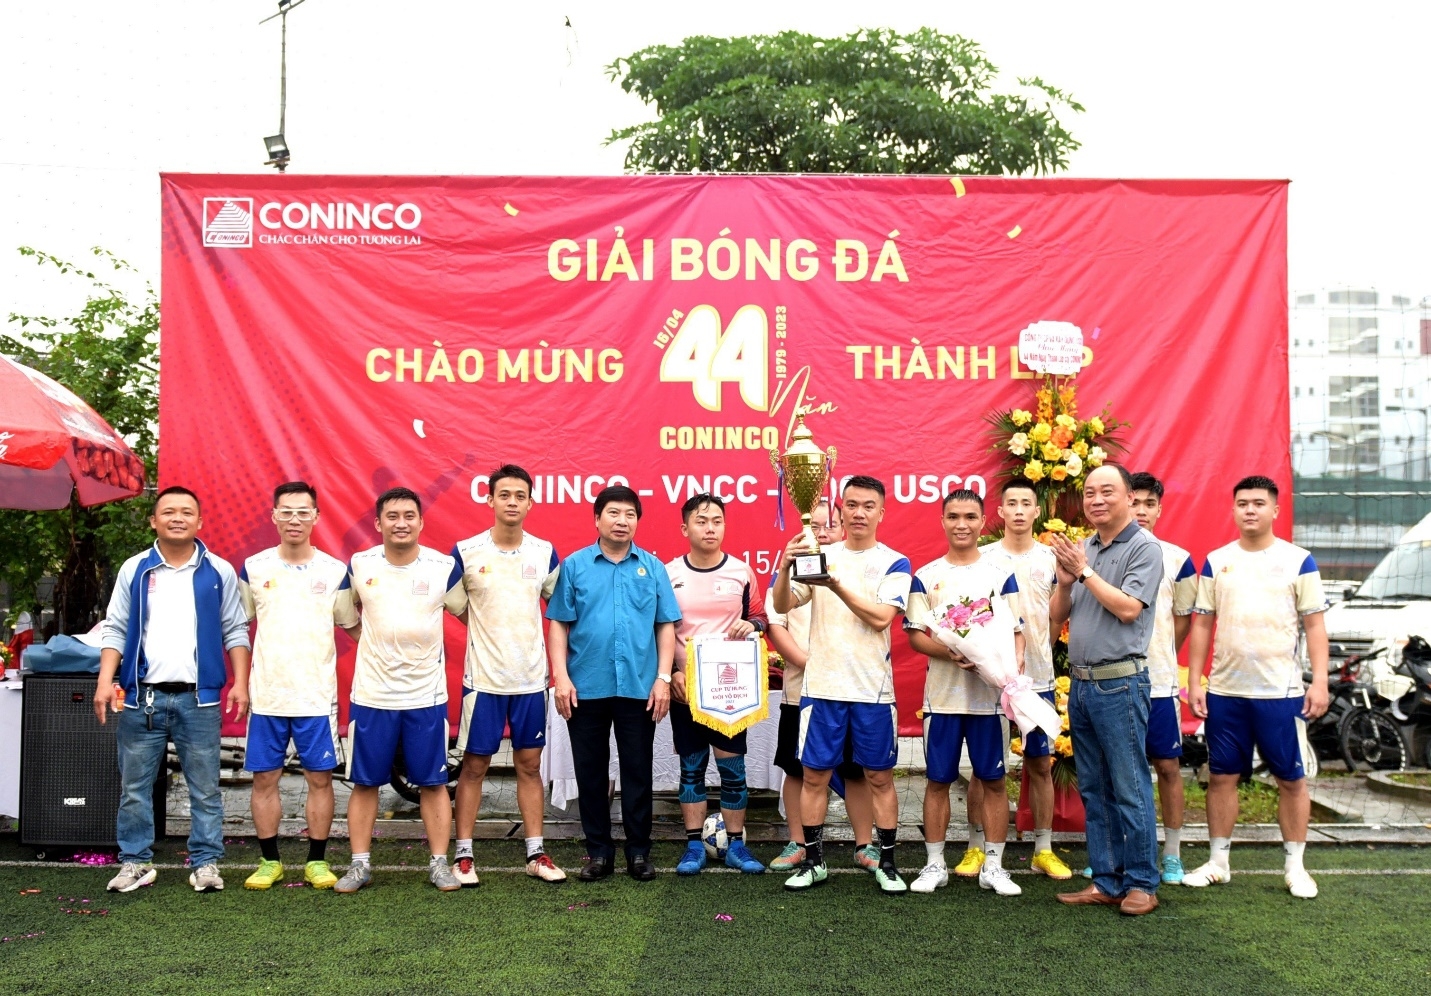 Sôi nổi Giải bóng đá Tứ hùng chào mừng 44 năm ngày thành lập Công ty CONINCO